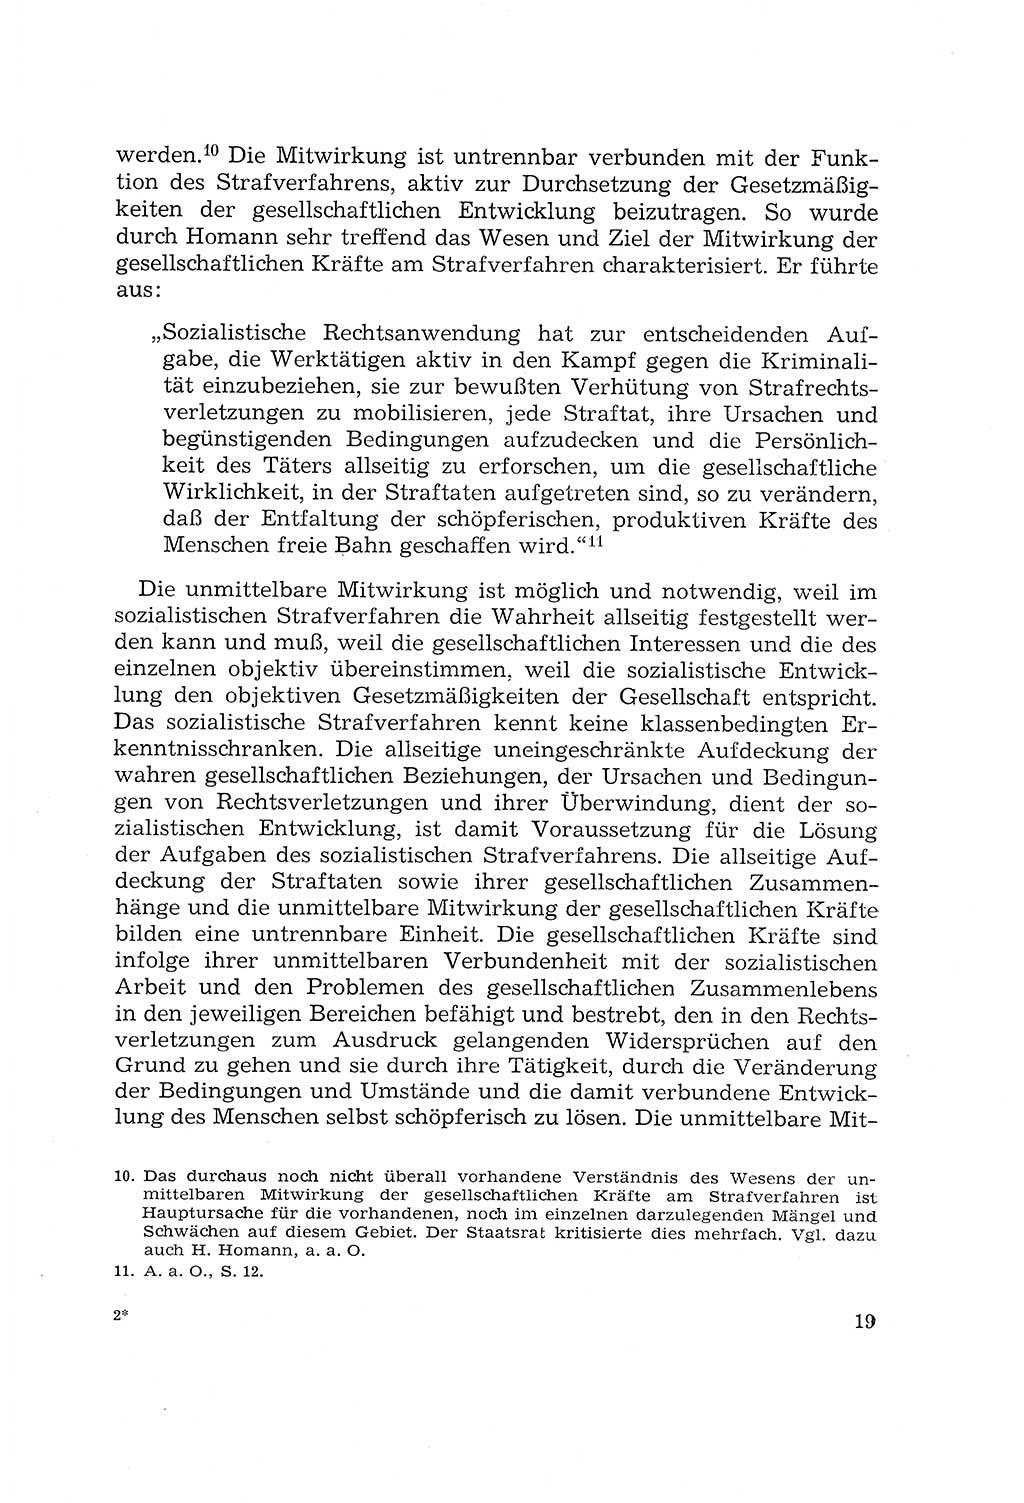 Die Mitwirkung der Werktätigen am Strafverfahren [Deutsche Demokratische Republik (DDR)] 1966, Seite 19 (Mitw. Str.-Verf. DDR 1966, S. 19)